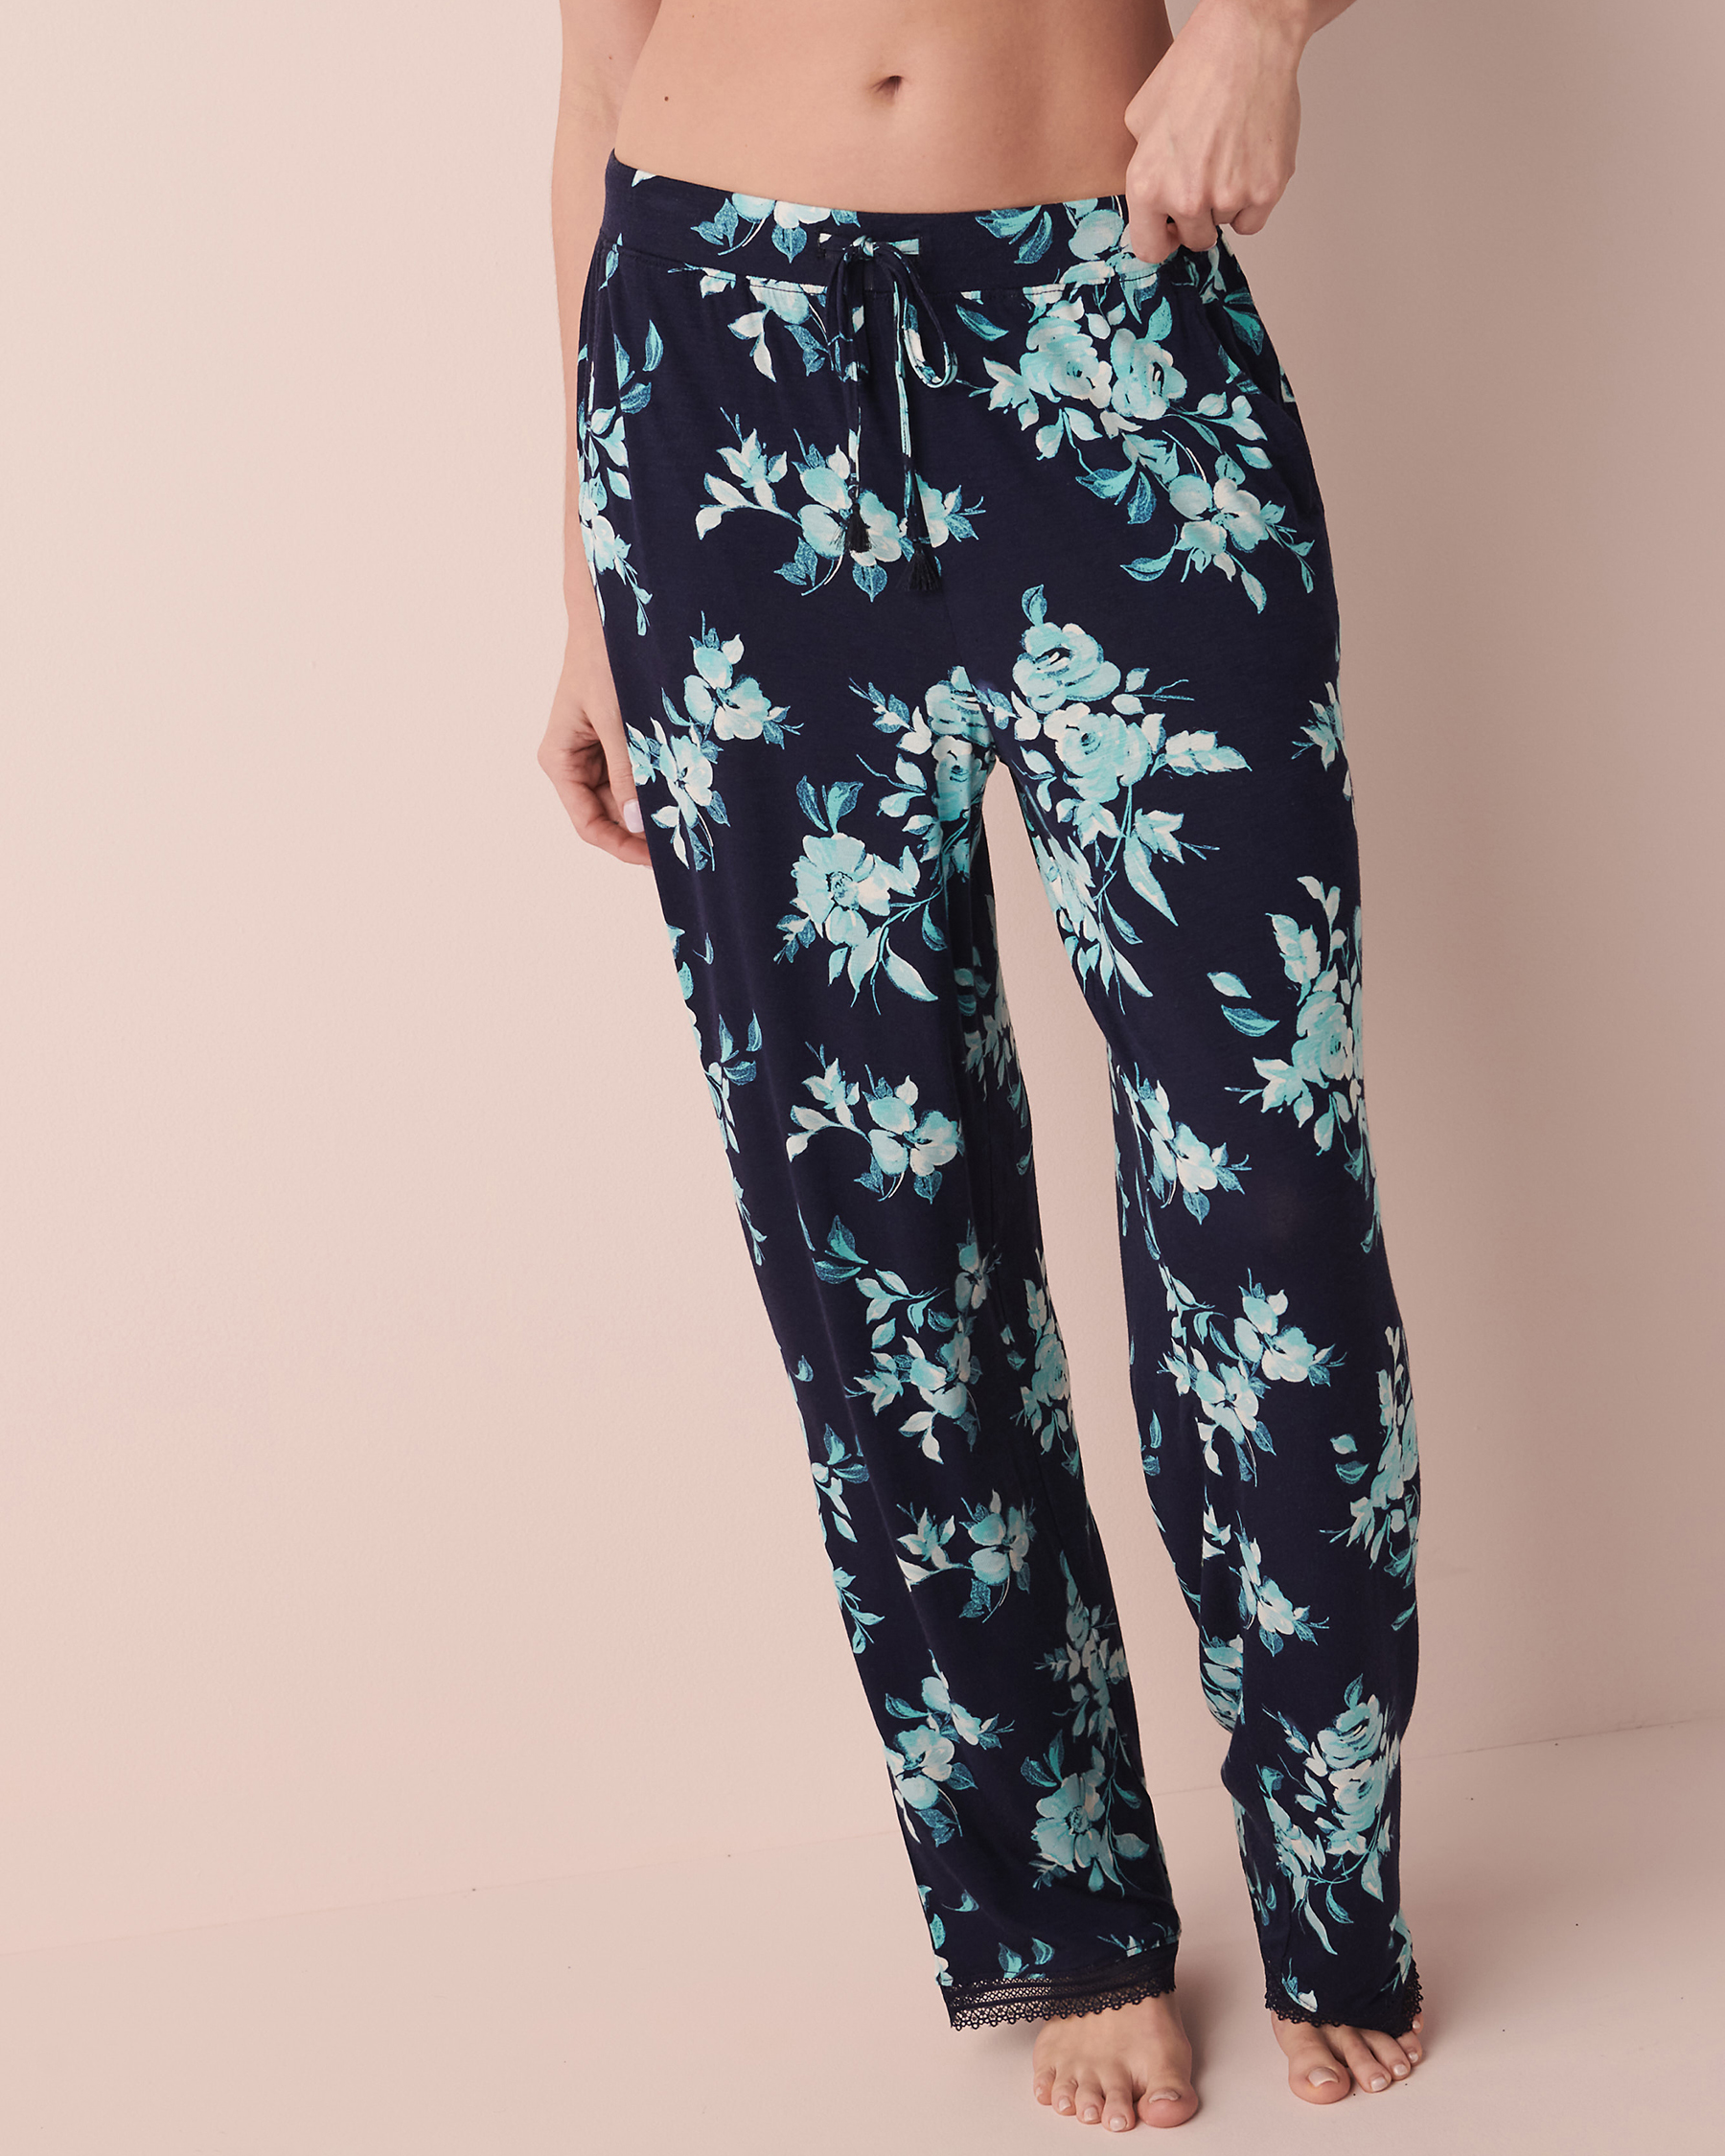 Soft Jersey Lace Trim Pants - Navy floral | la Vie en Rose